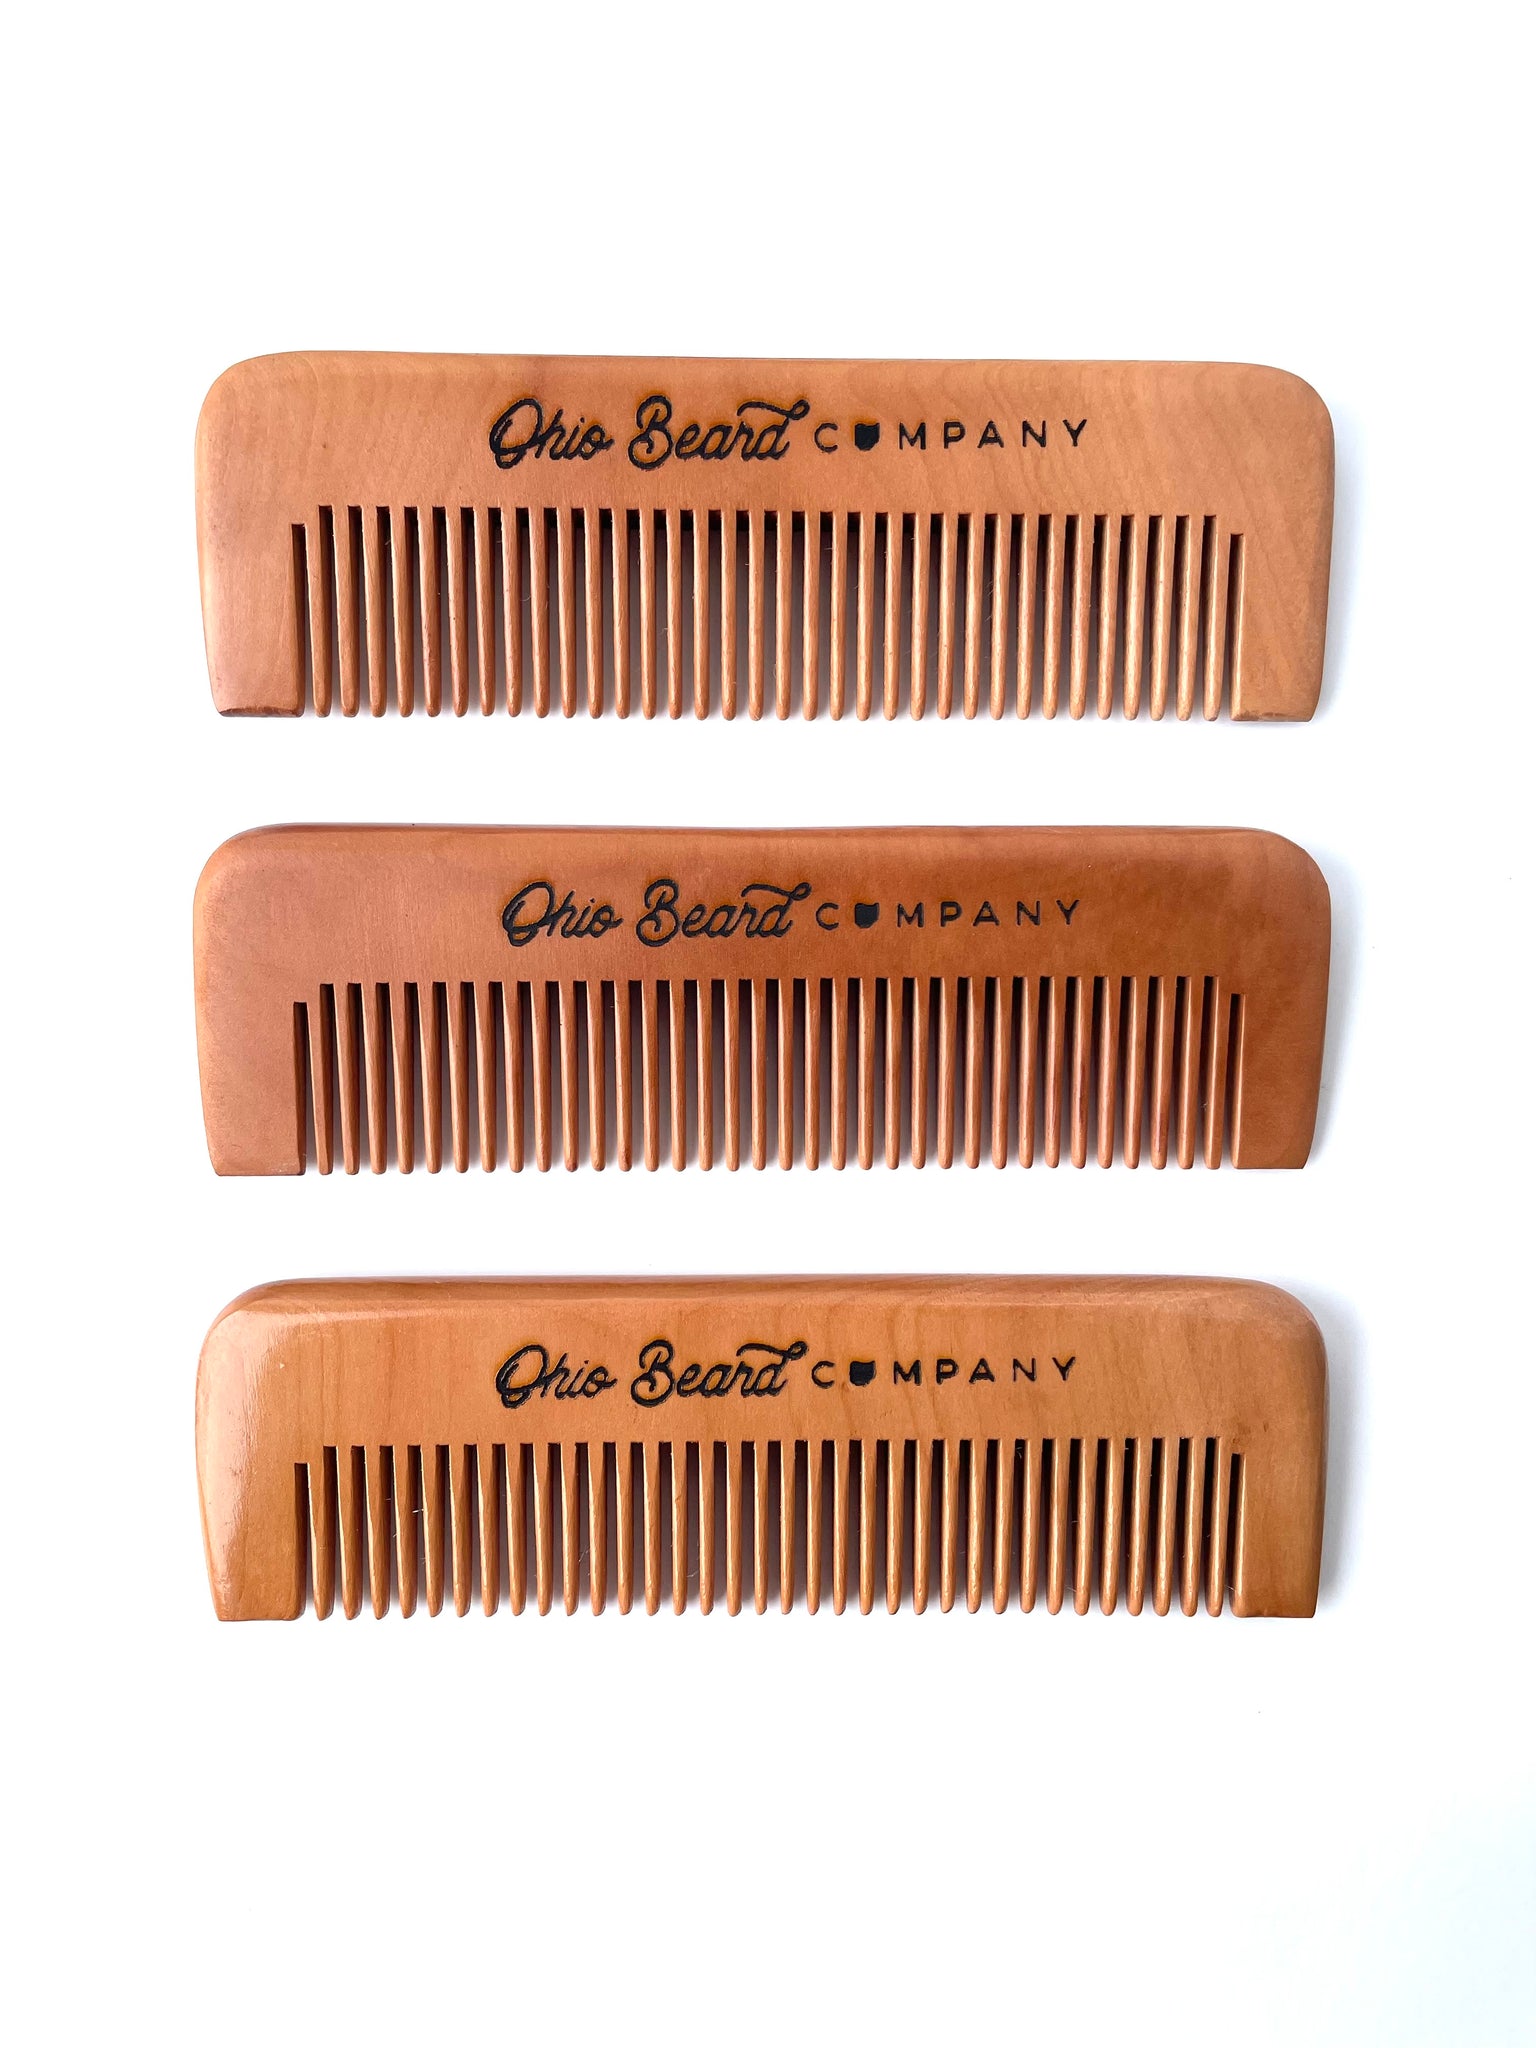 Wooden Beard Comb - Ohio Beard Company – Ohio Beard Company